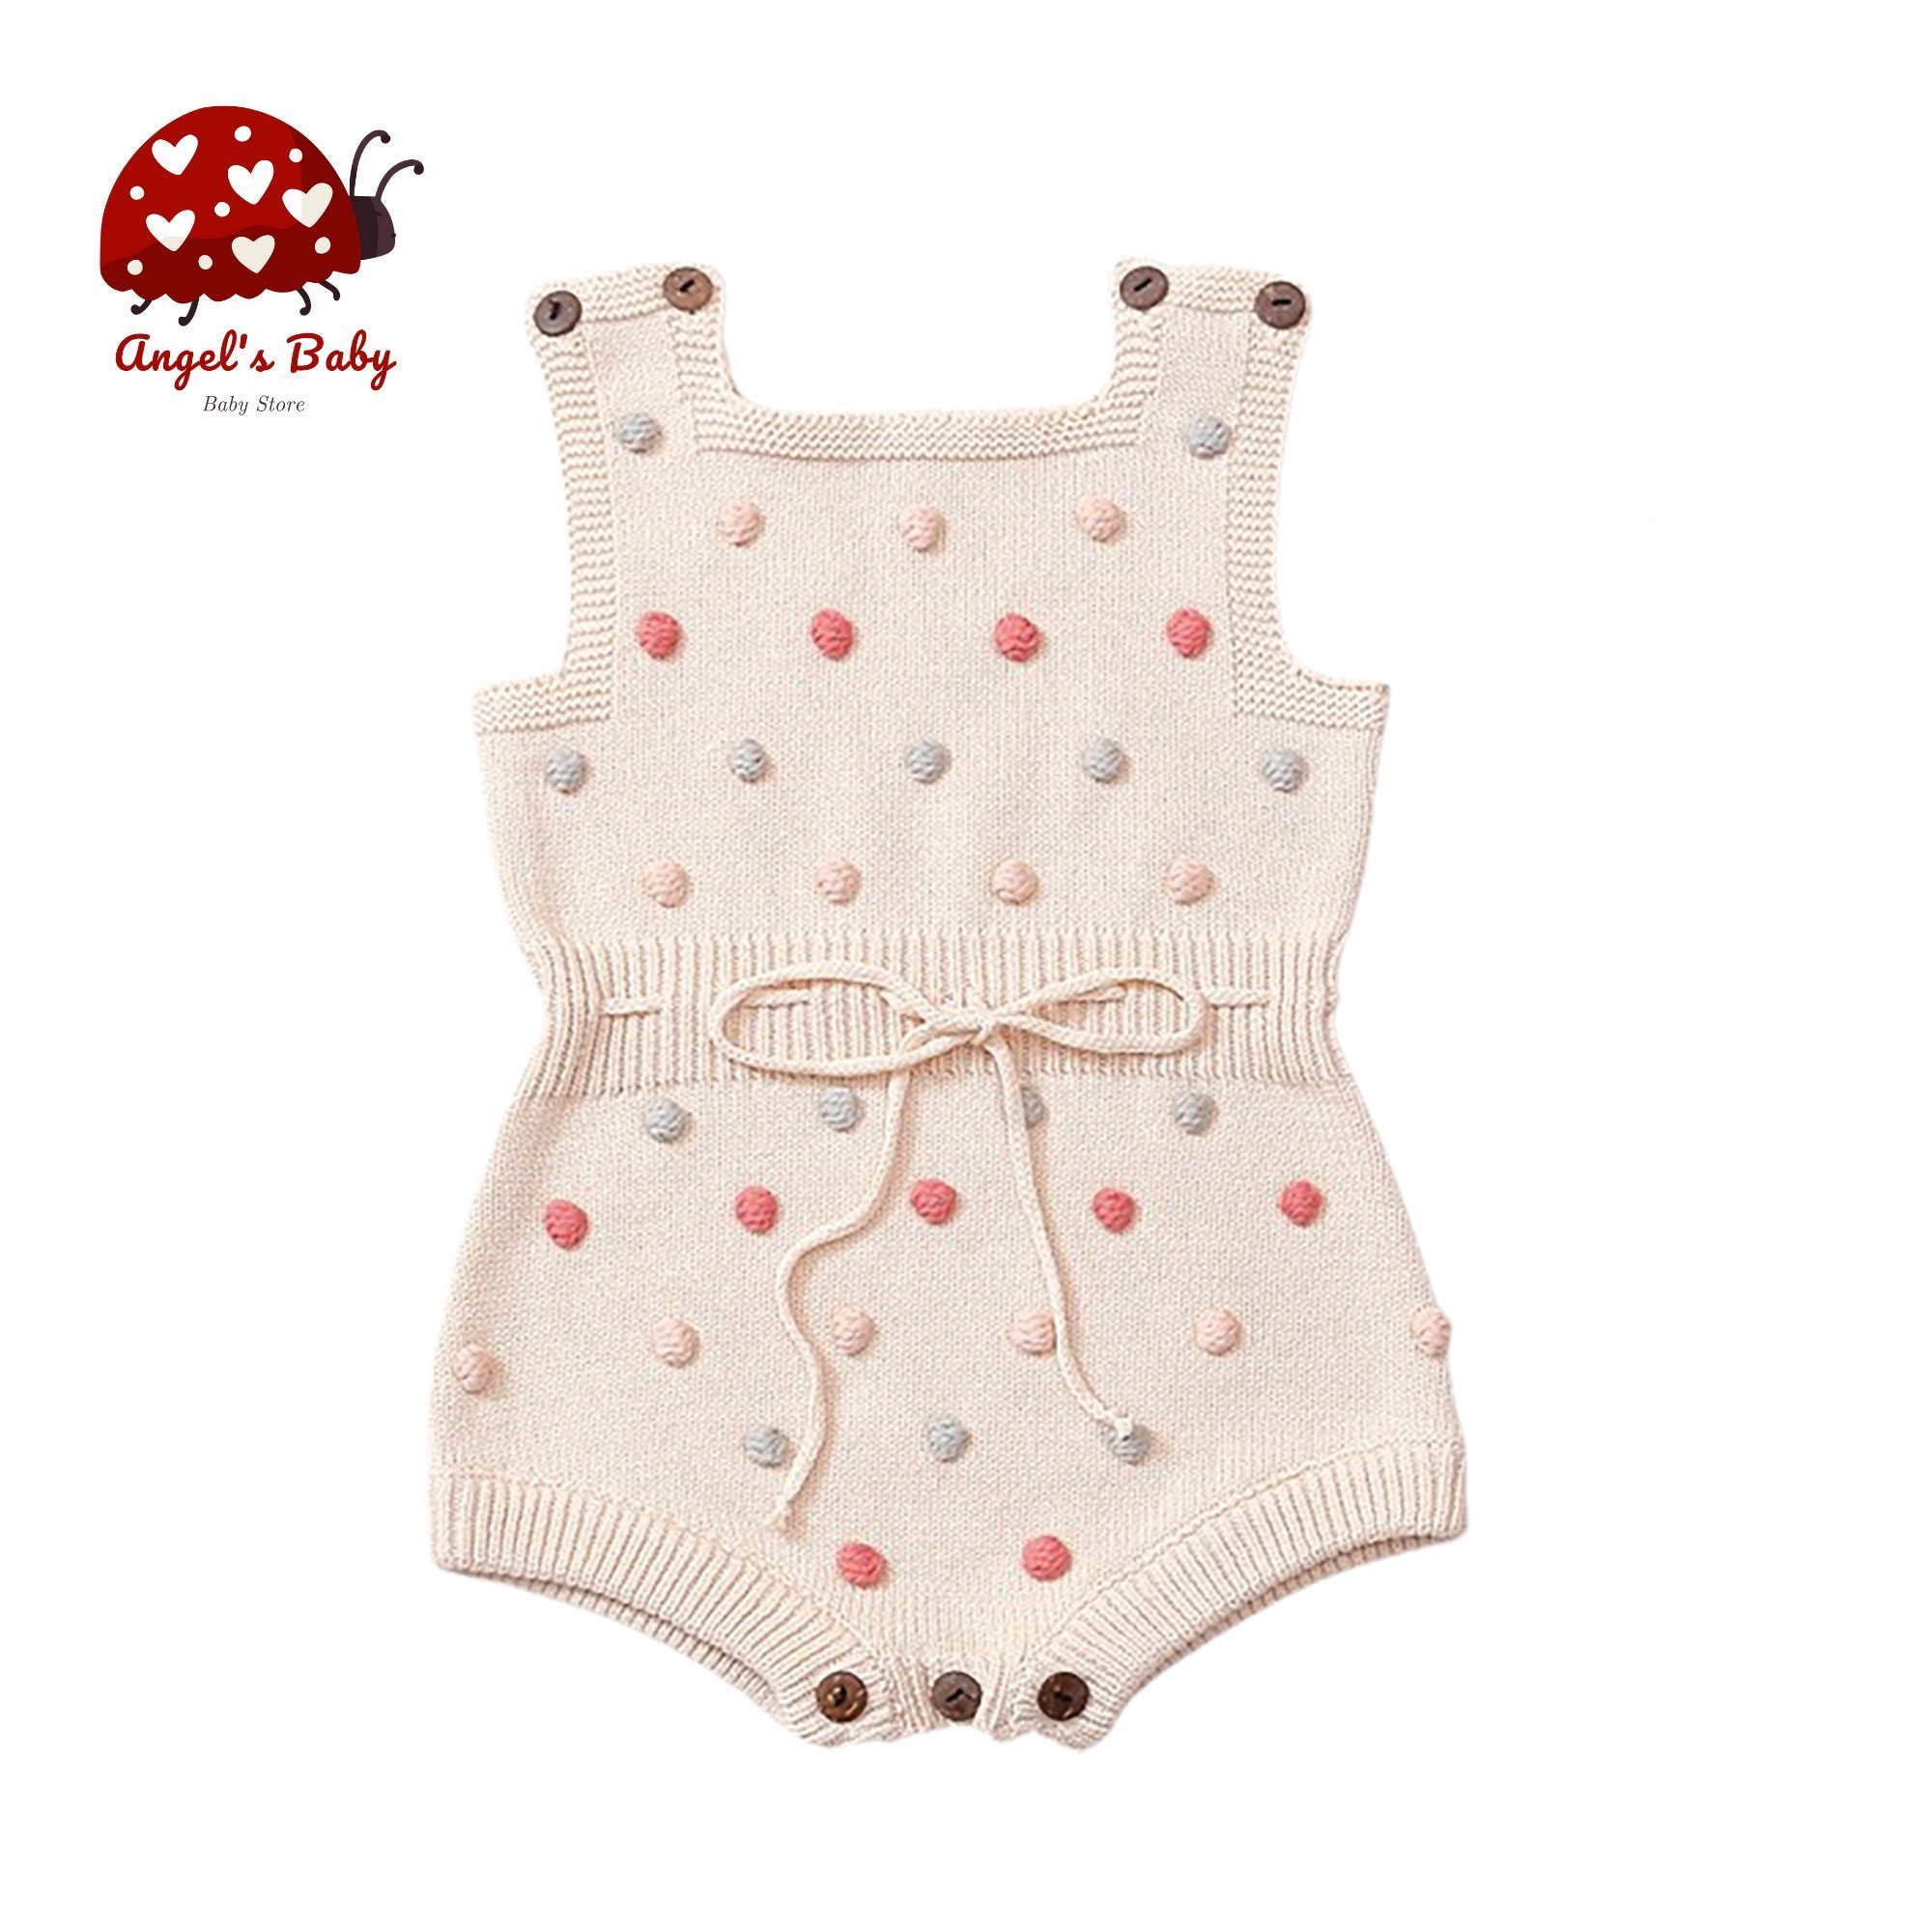 Angel's Baby Strampler Baby Kurzoverall Jumpsuit in Strick aus Baumwolle für Mädchen in tollem Design creme